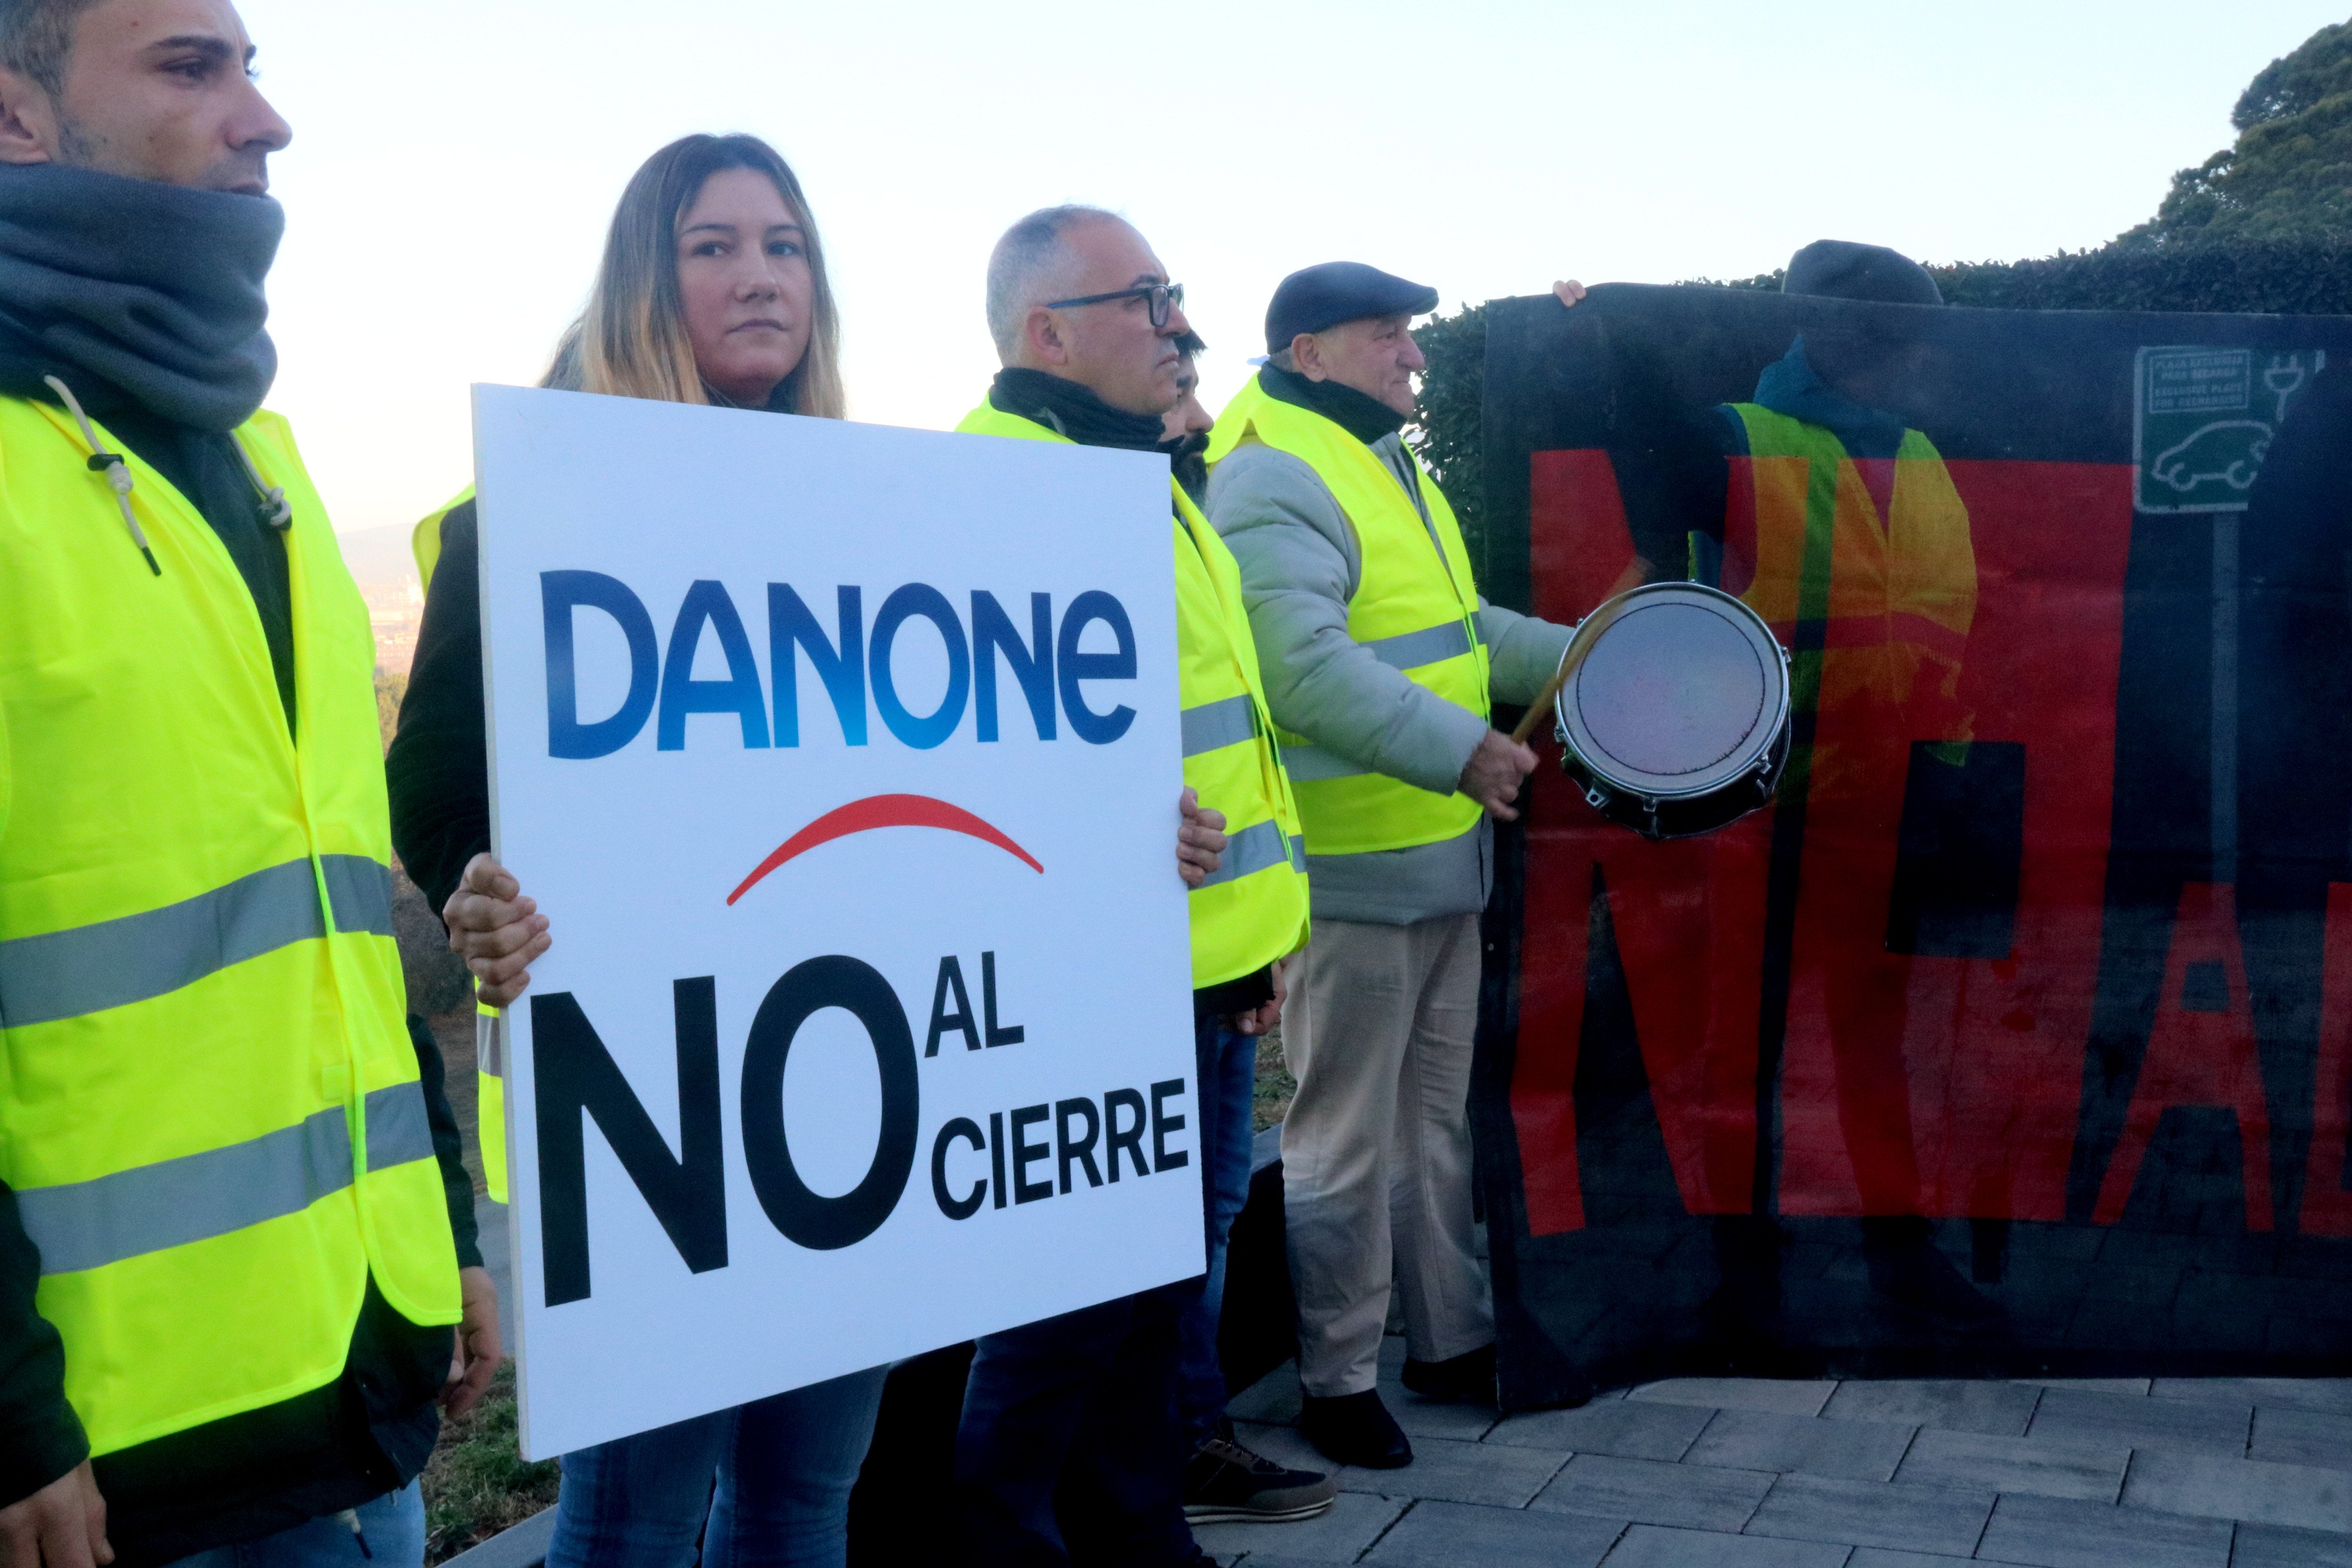 Danone cerrará en Parets a finales de año y los trabajadores propondrán traslados a Valencia